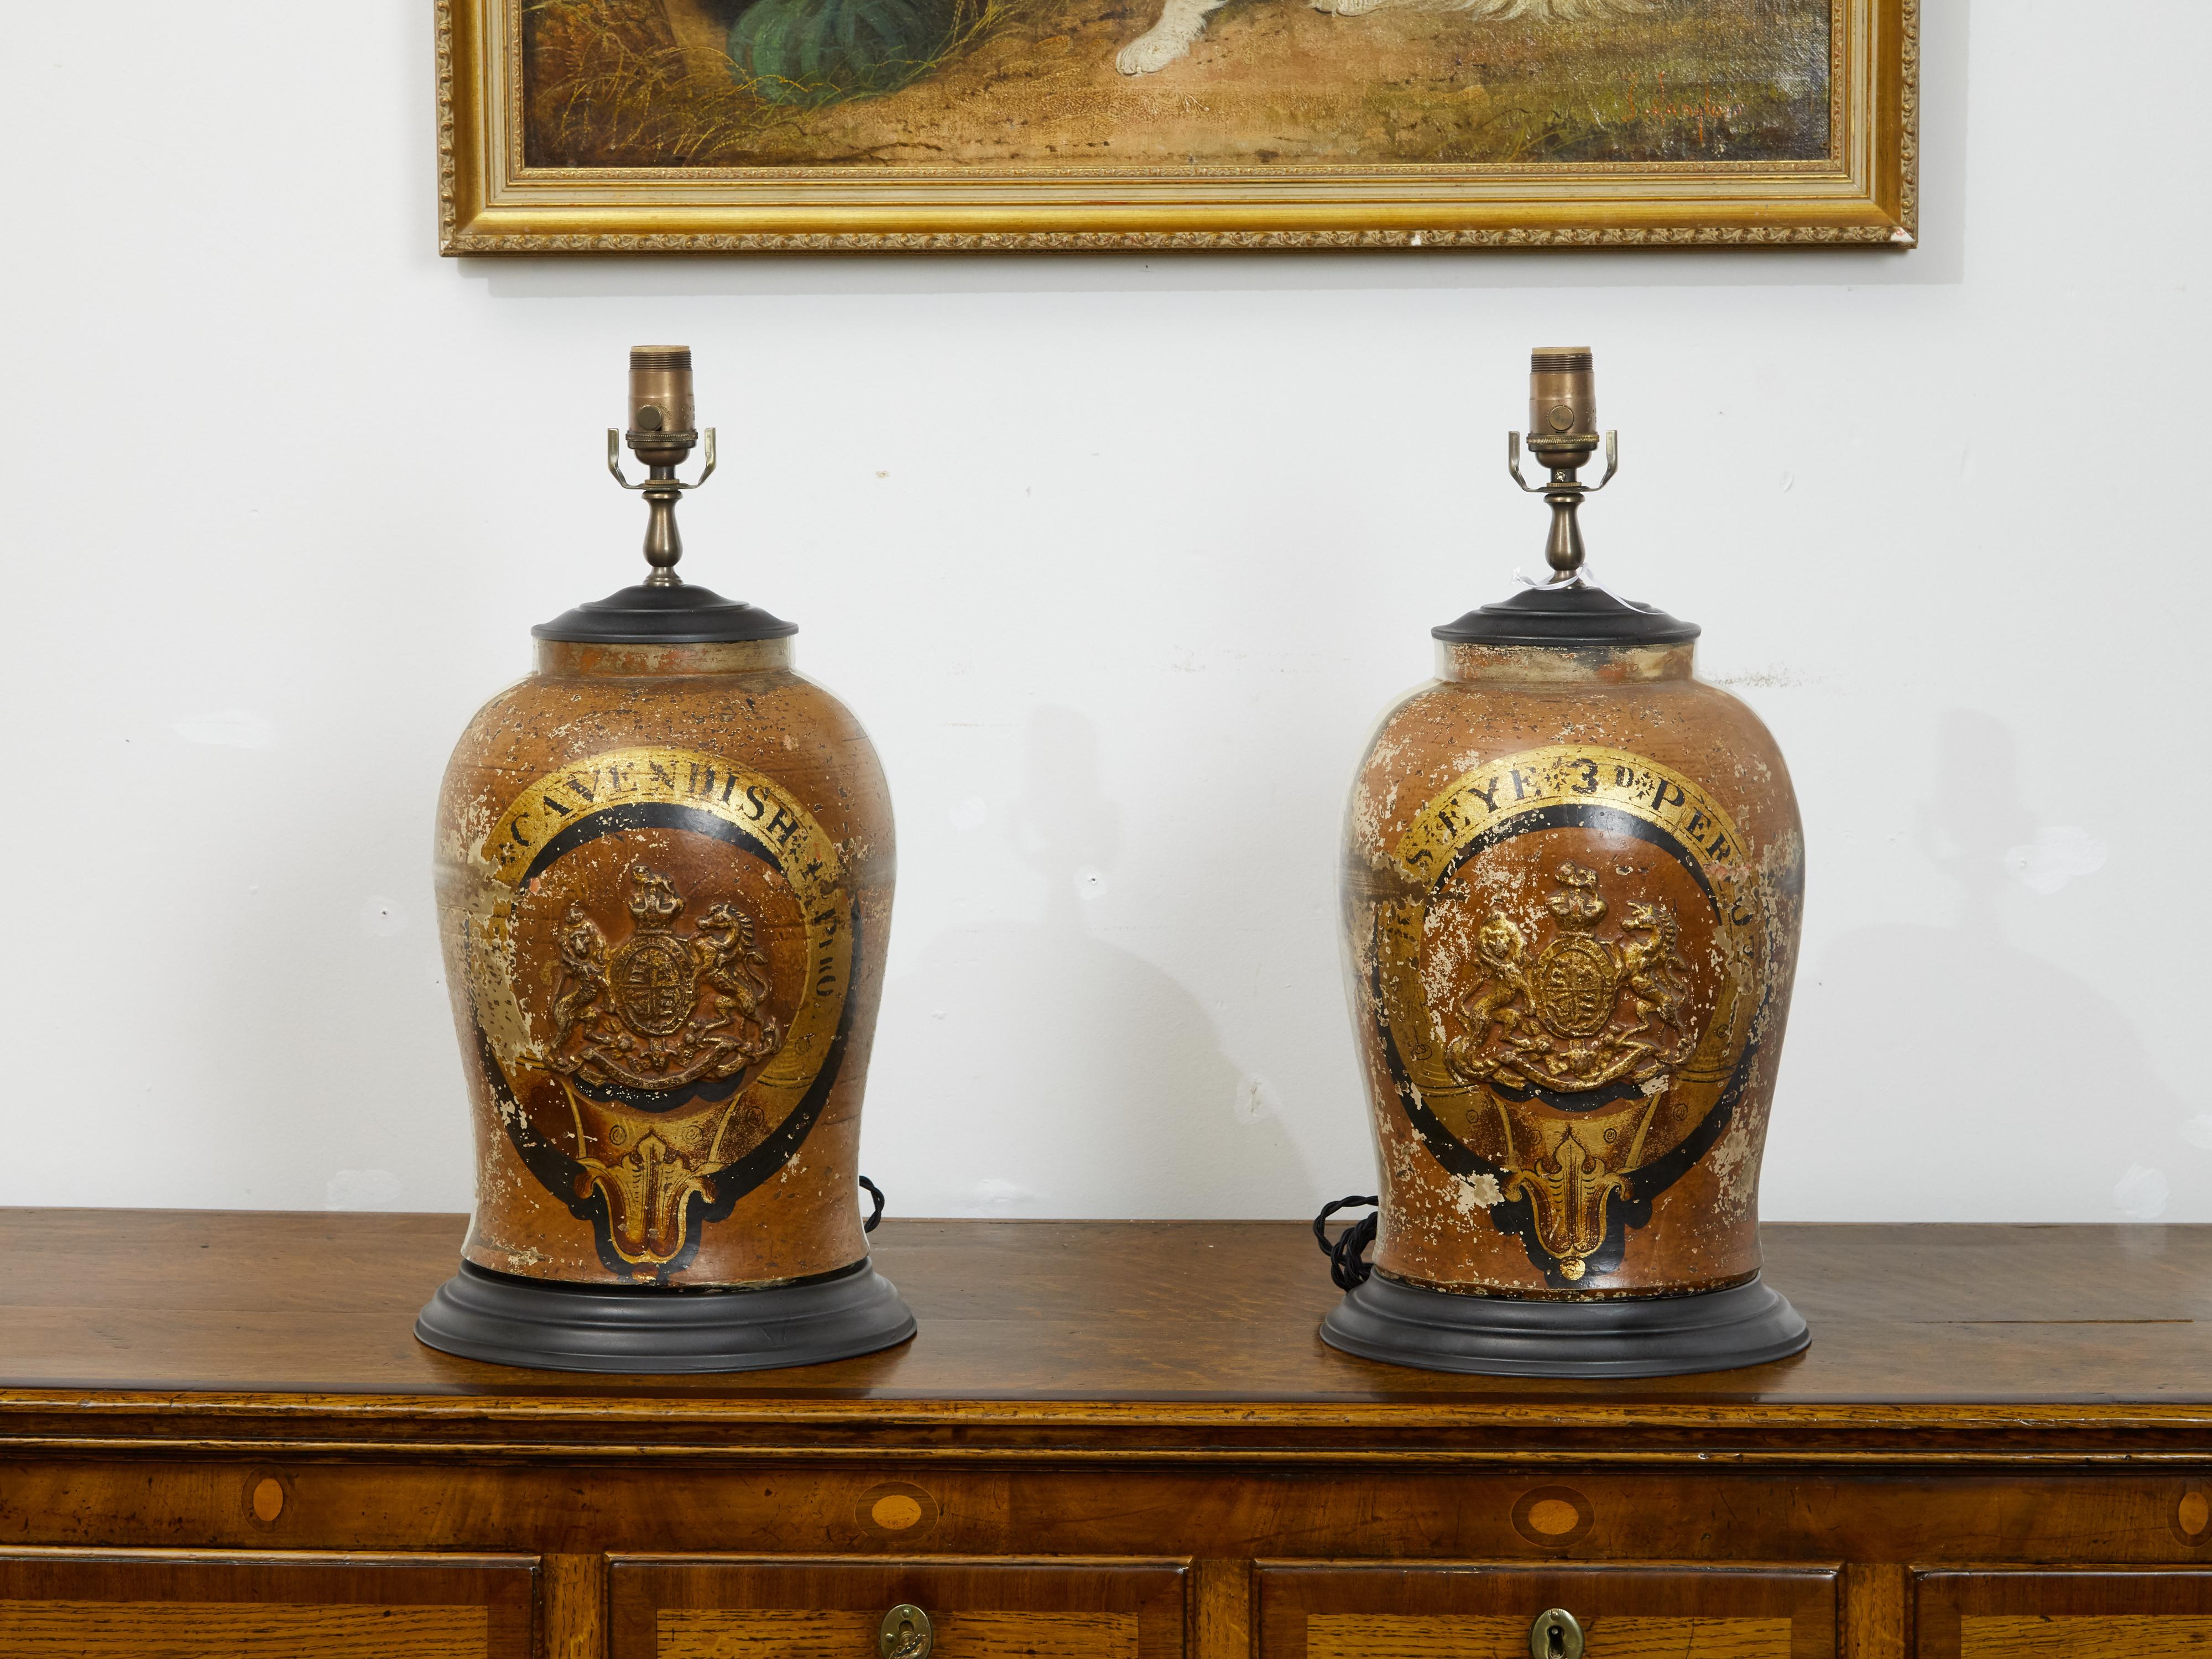 Une paire de grès anglais de la fin du 19e siècle, avec des armoiries transformées en lampes de table. Créée en Angleterre au cours du dernier quart du XIXe siècle, cette paire de grès anglais a été transformée en lampe de table. Ils sont ornés des